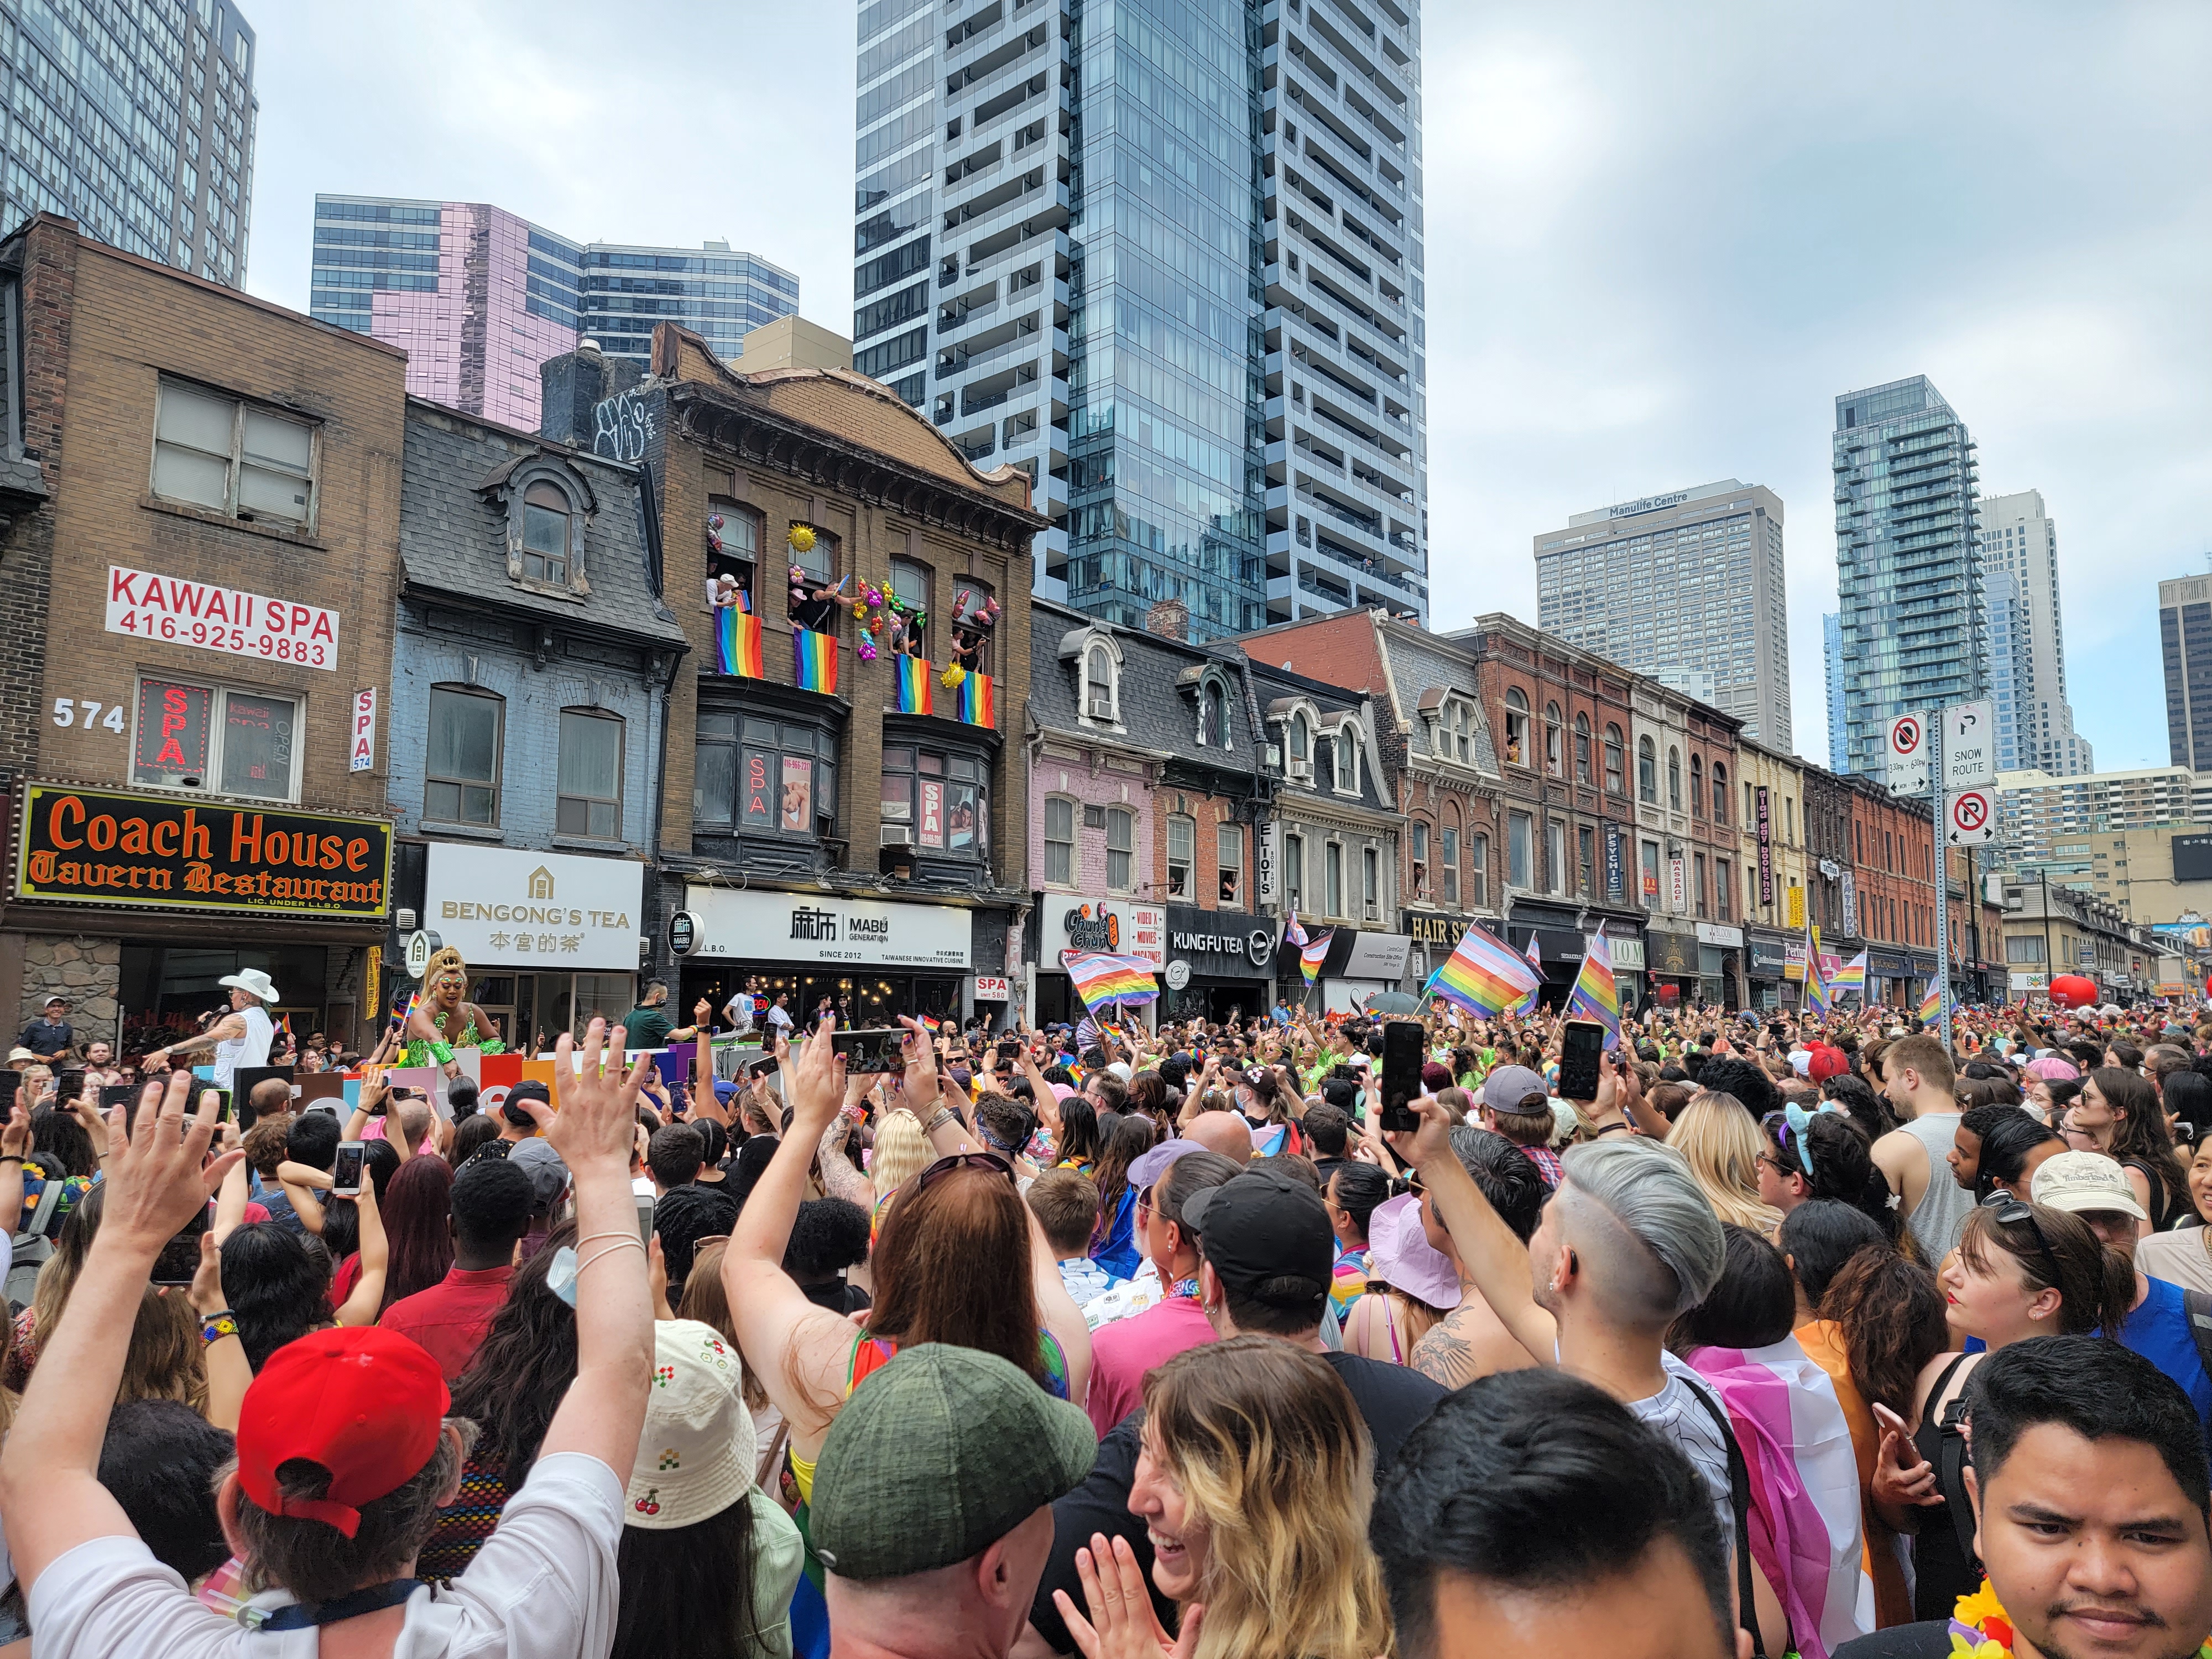 캐나다 토론토에서 지난 달 26일 열린 프라이드 행사는 참가자들이 무지개 깃발을 들어보이며 성소수자에 지지를 표하고 있다. 김한나 통신원 